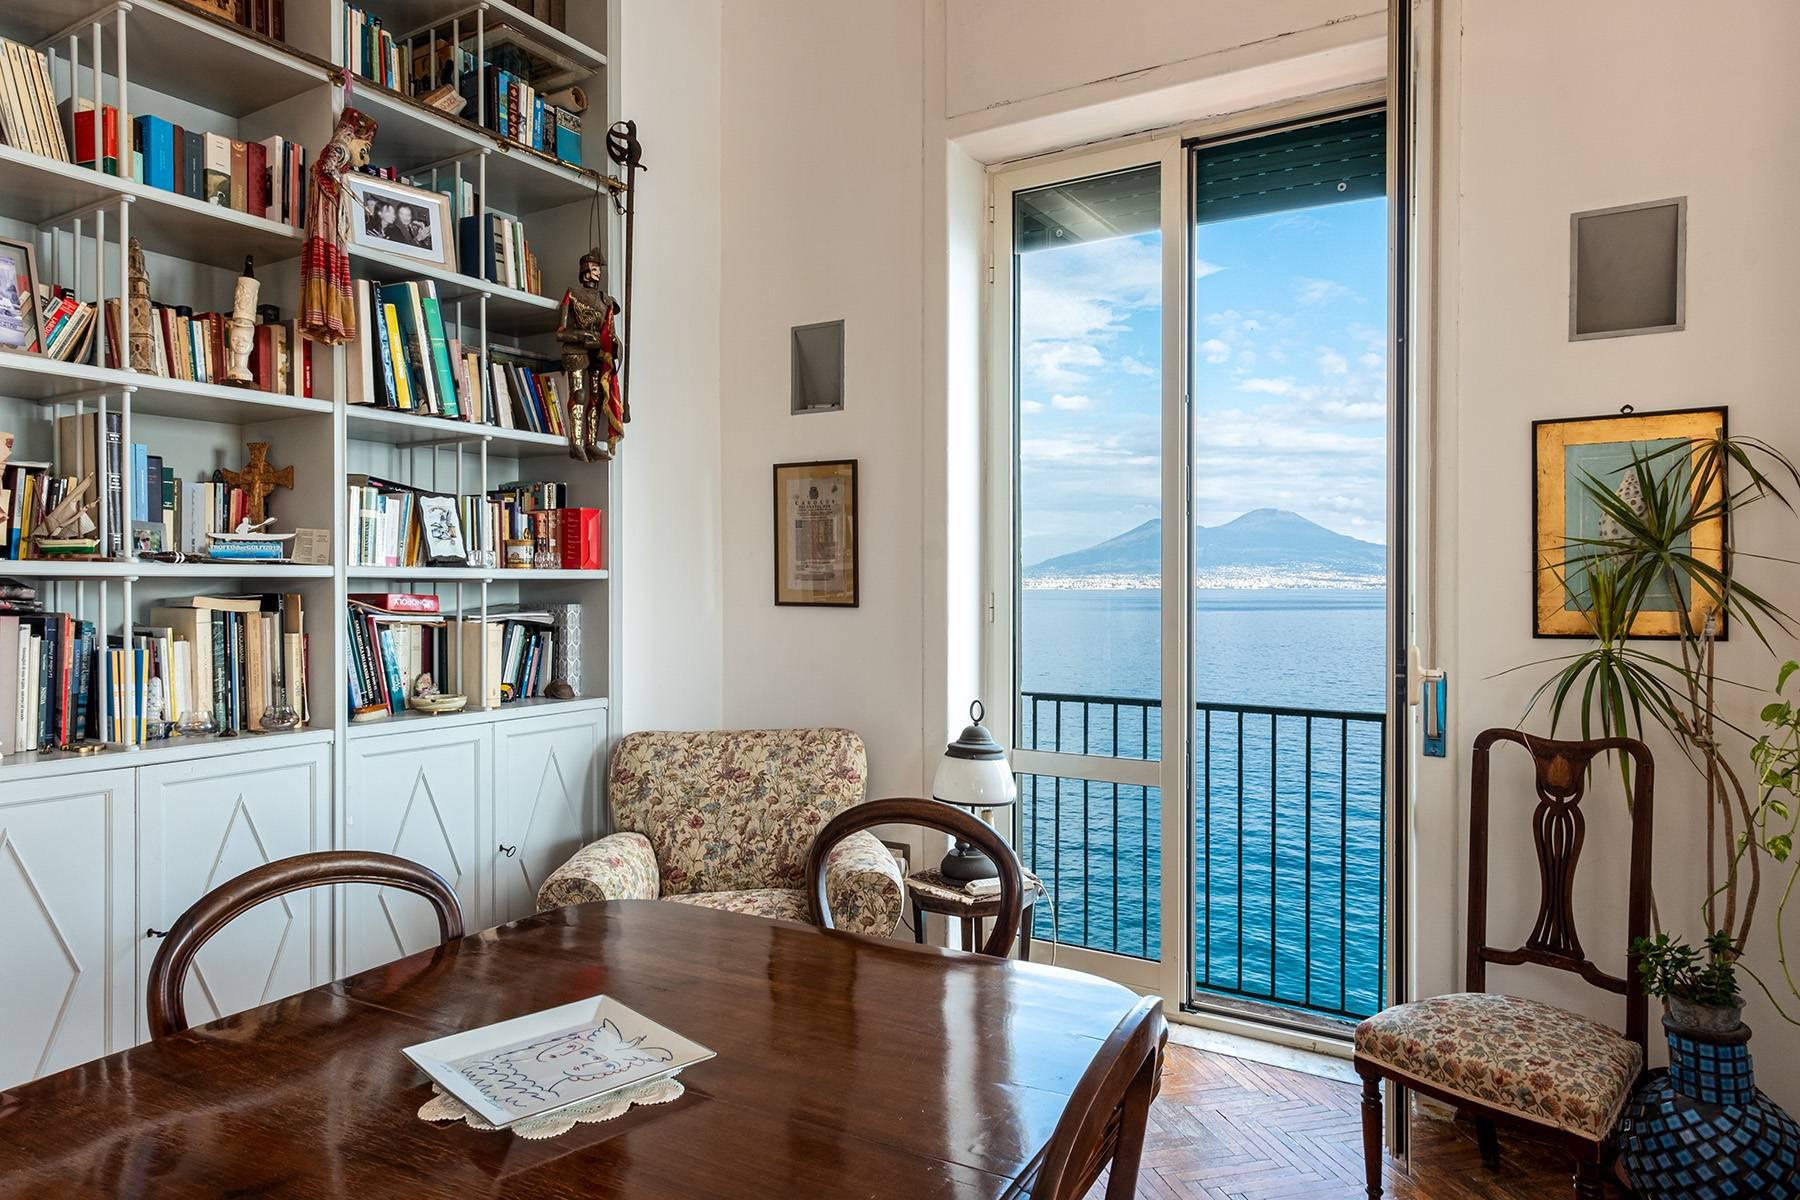 Первая линия моря! Потрясающие апартаменты в старинной вилле в Неаполе, Италия - 21